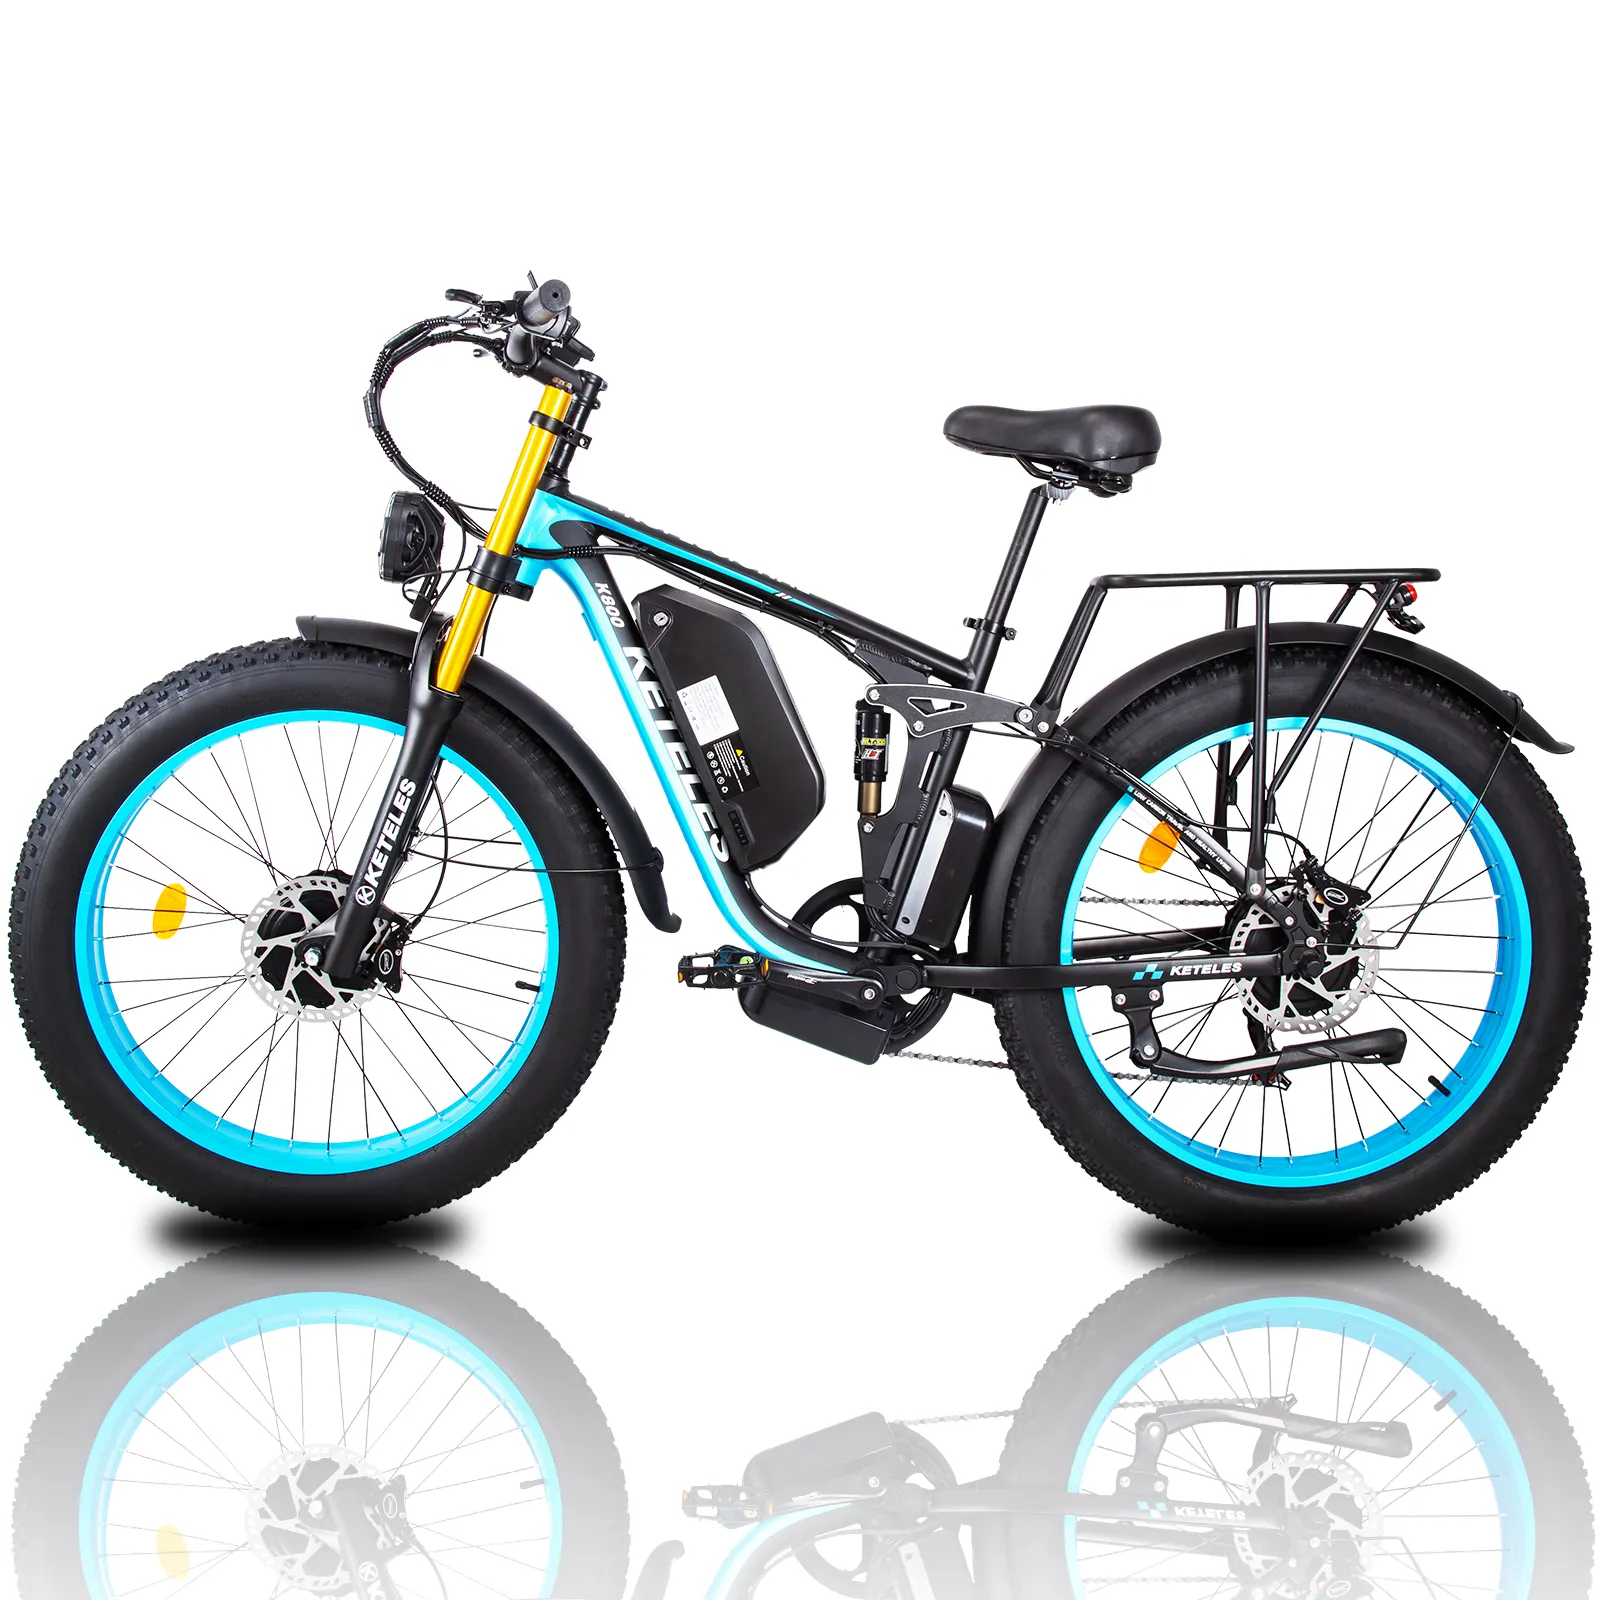 48V SUSPENSIÓN COMPLETA keteles precio al por mayor k800pro bicicleta 23ah batería electrilc bicicleta 26x4 pulgadas neumático grueso ebike 2000W